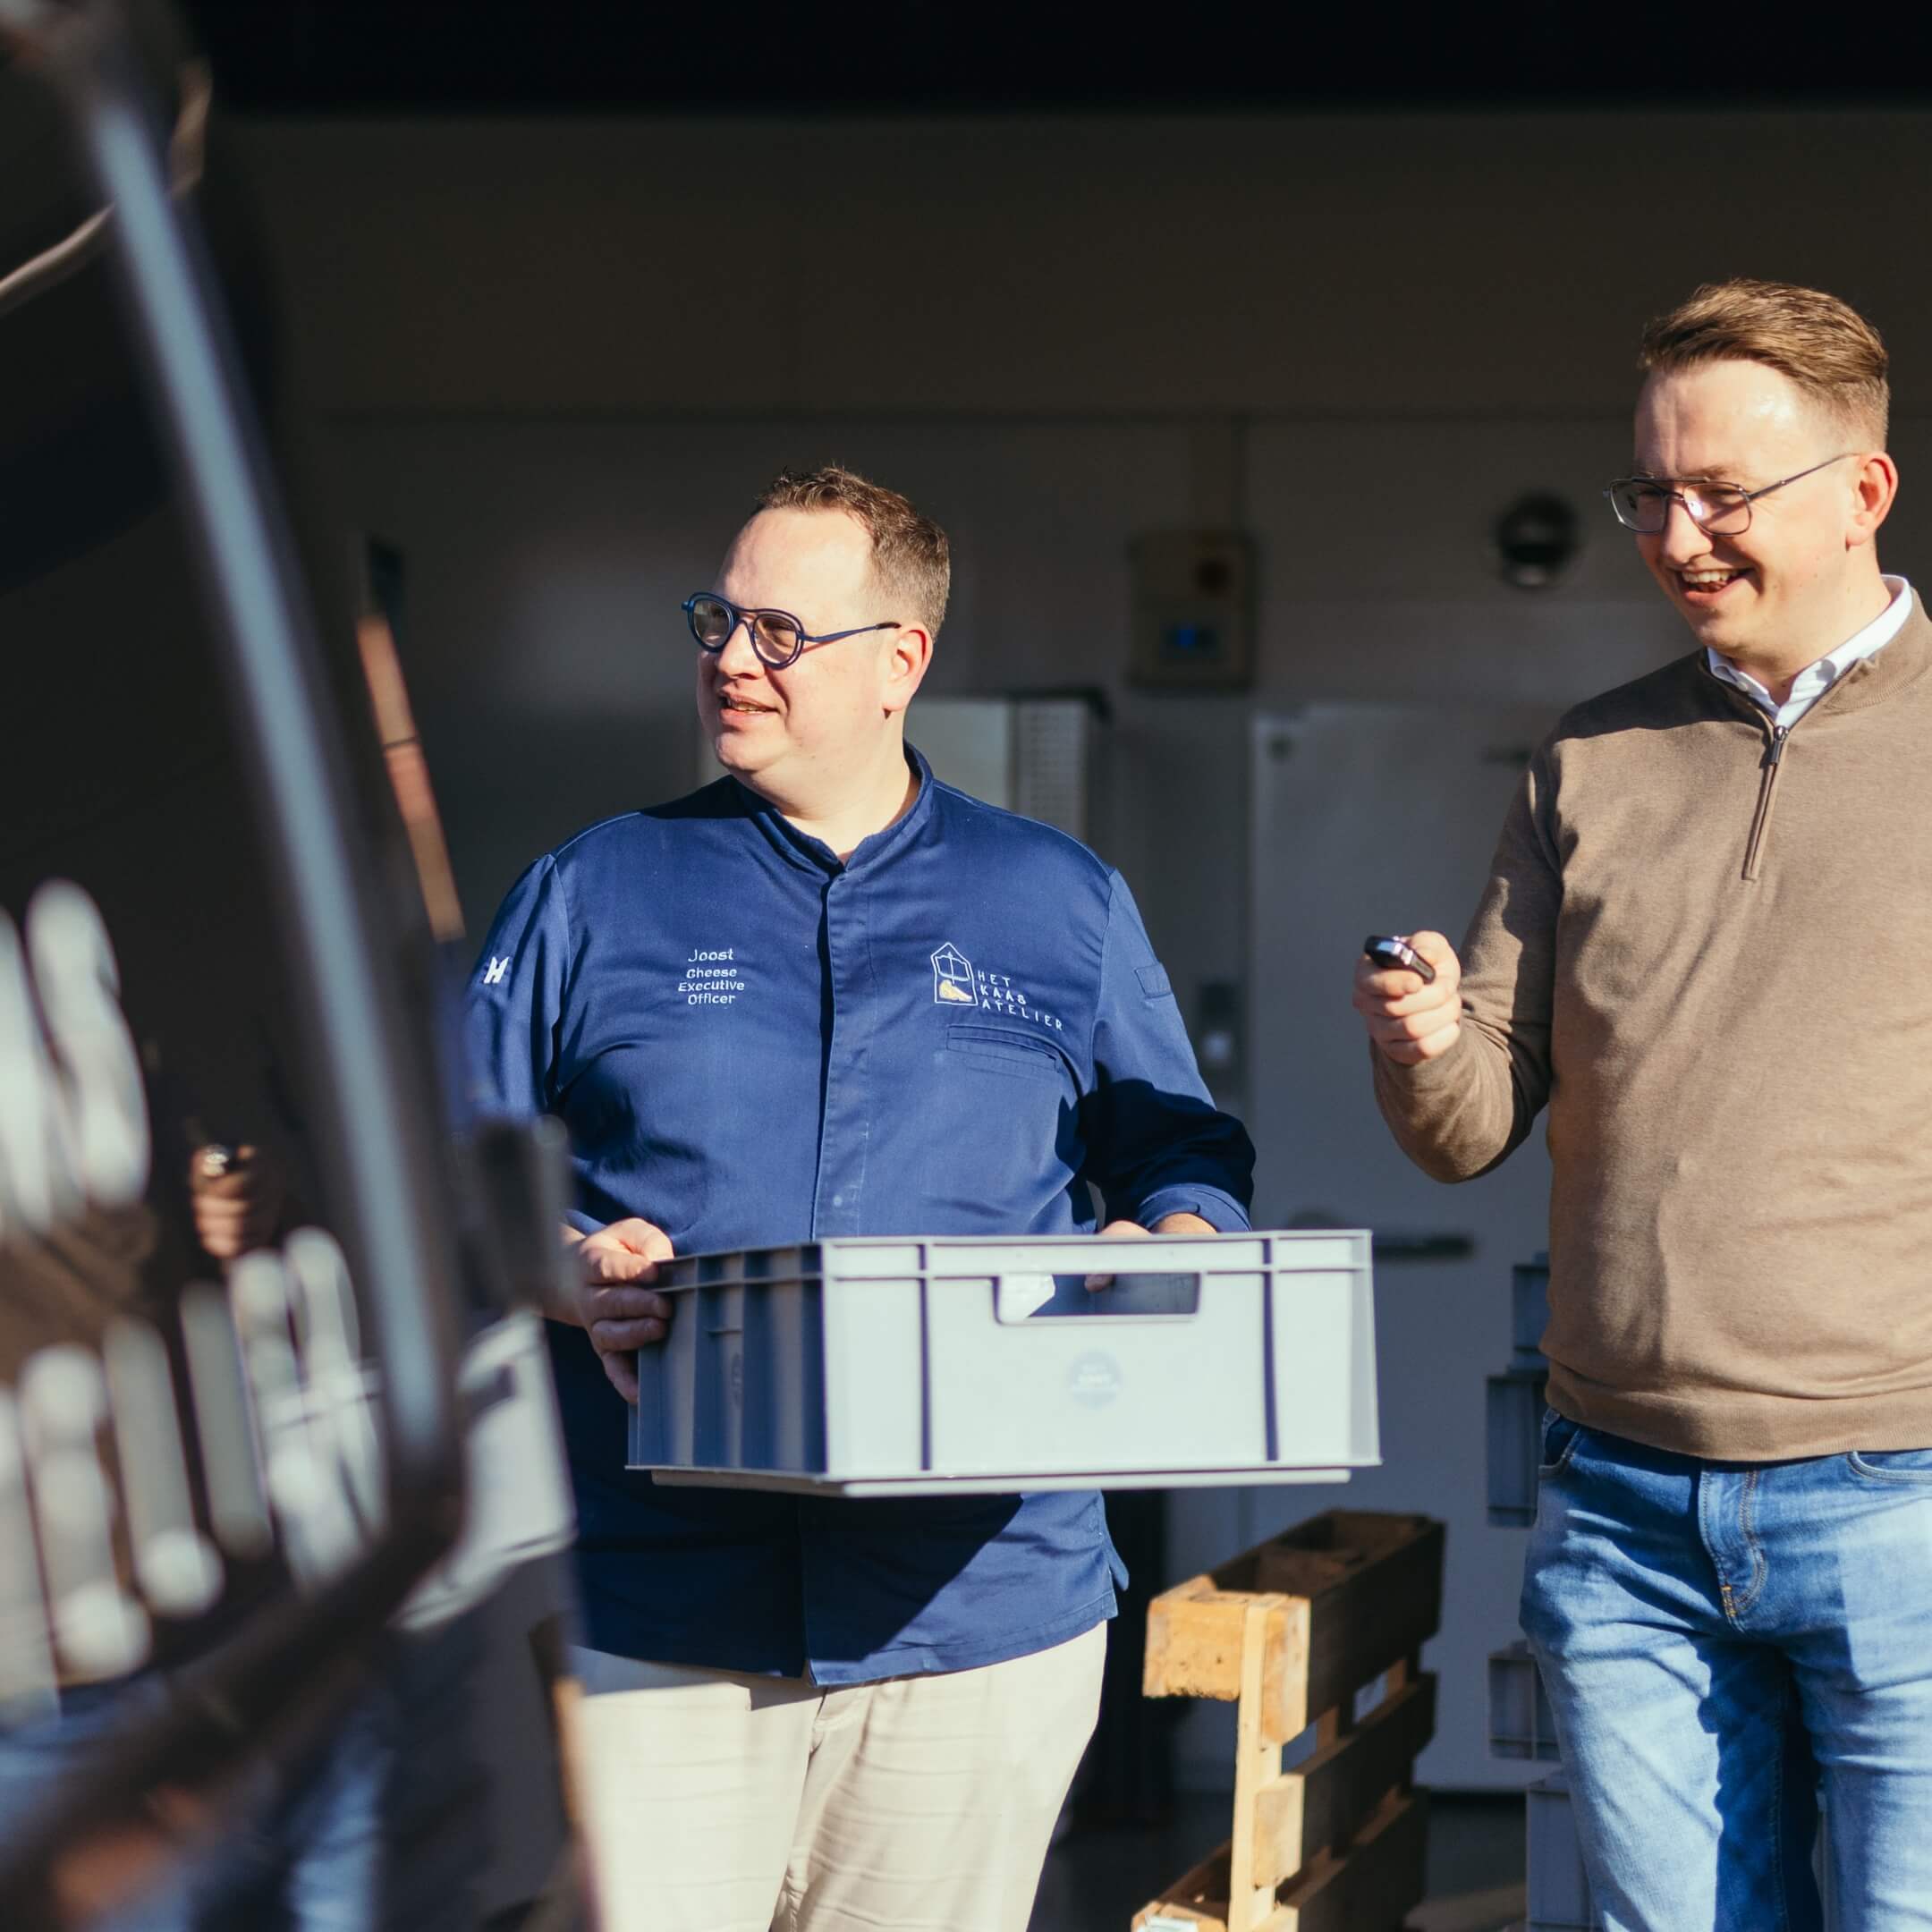 Perke Pellis van PEPE Wagenparkbeheer ondersteunt bij de oplevering van een nieuwe bedrijfswagen in omgeving Roosendaal